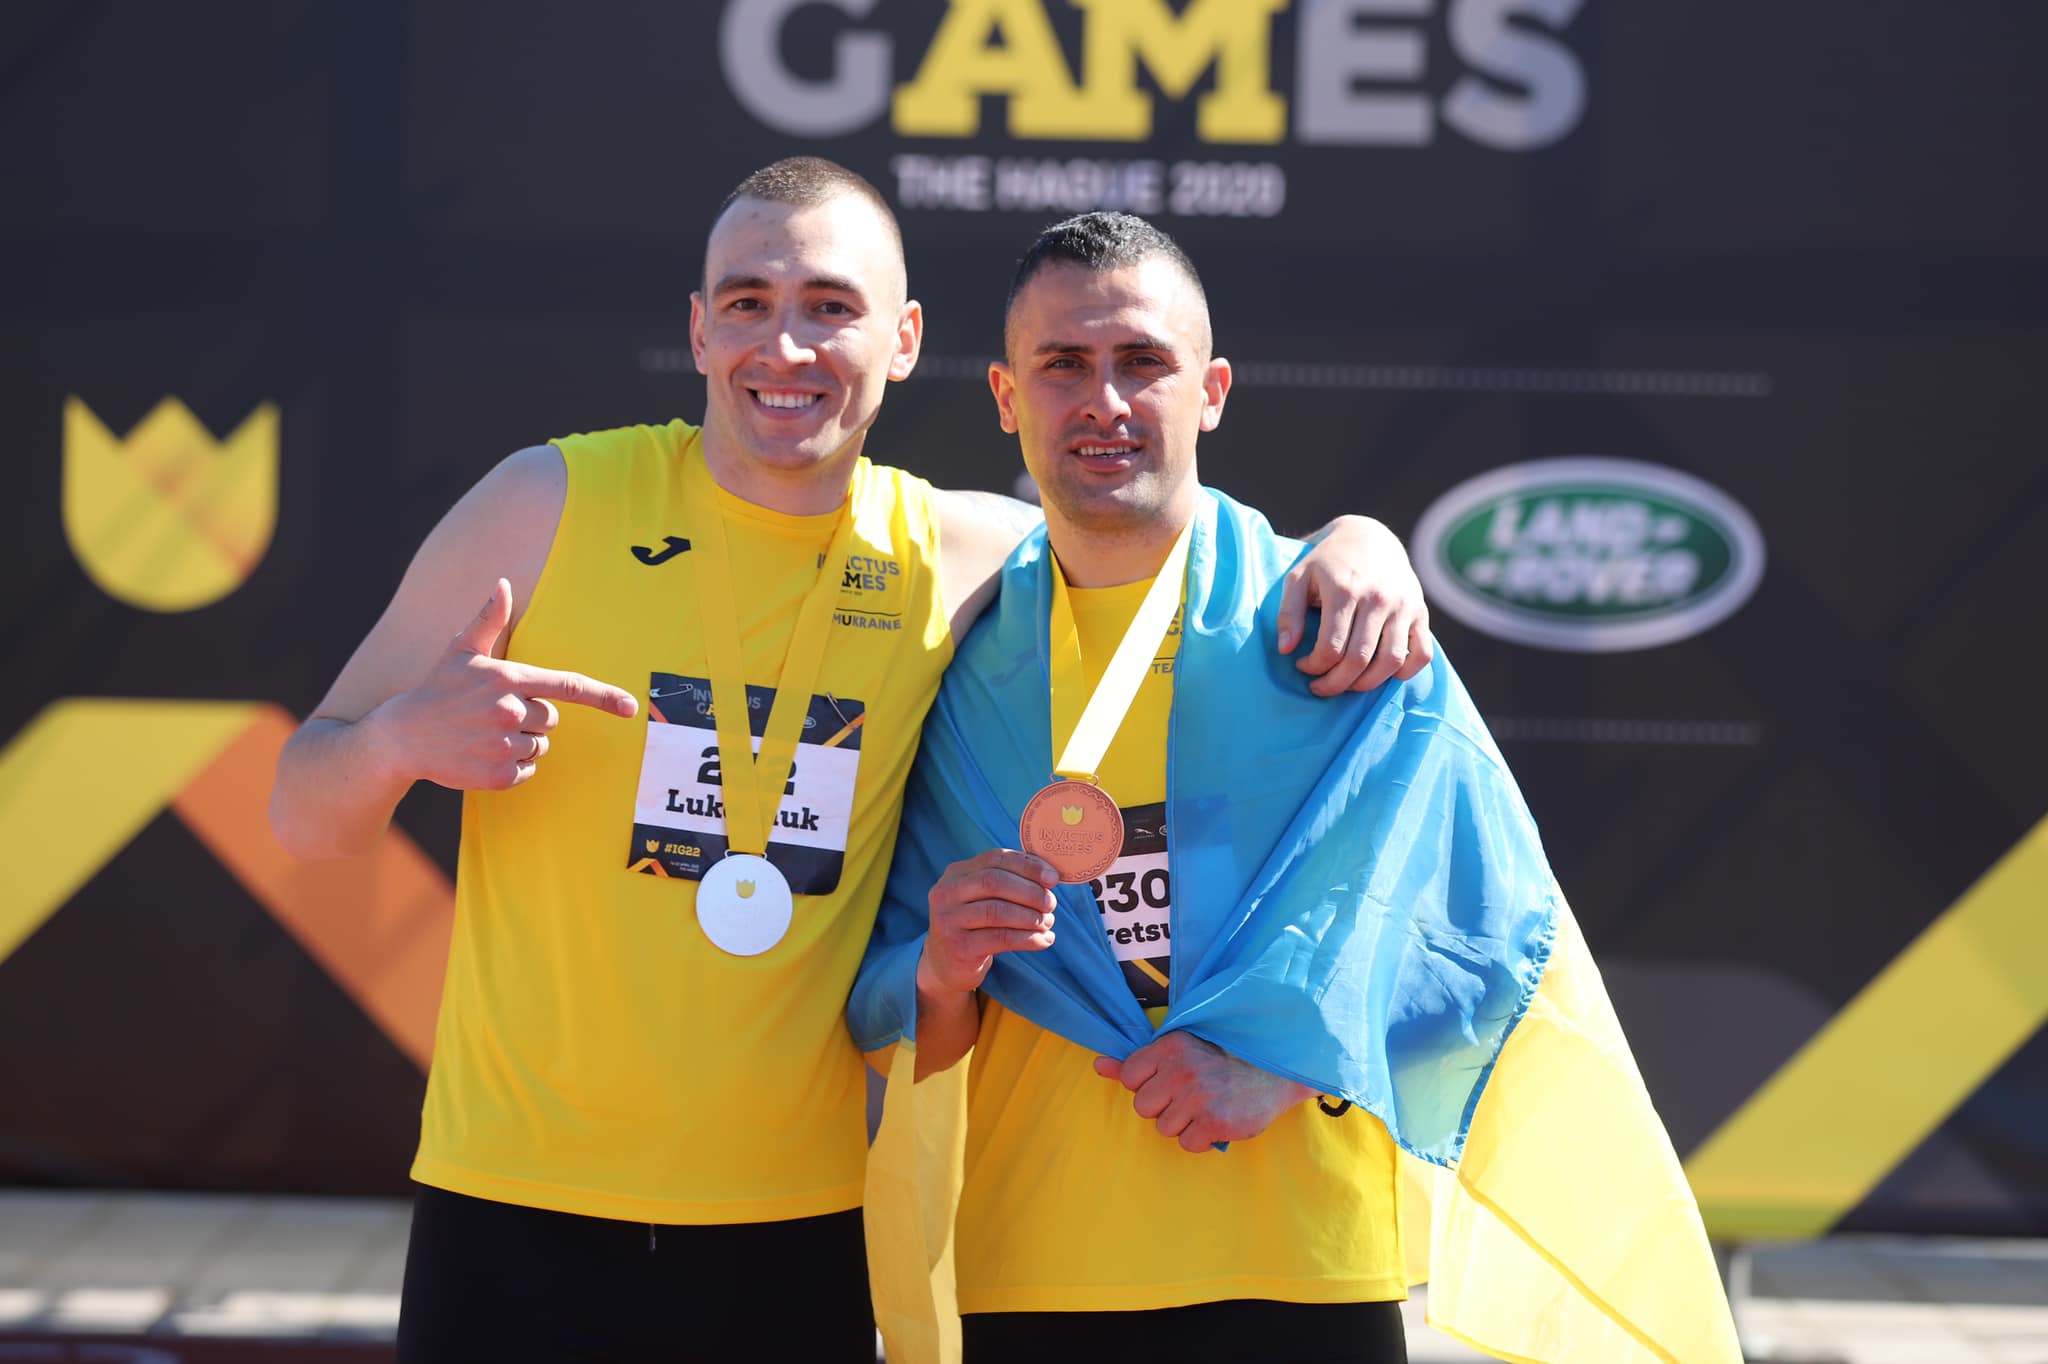 Україна здобула ще дві медалі на «Іграх нескорених»